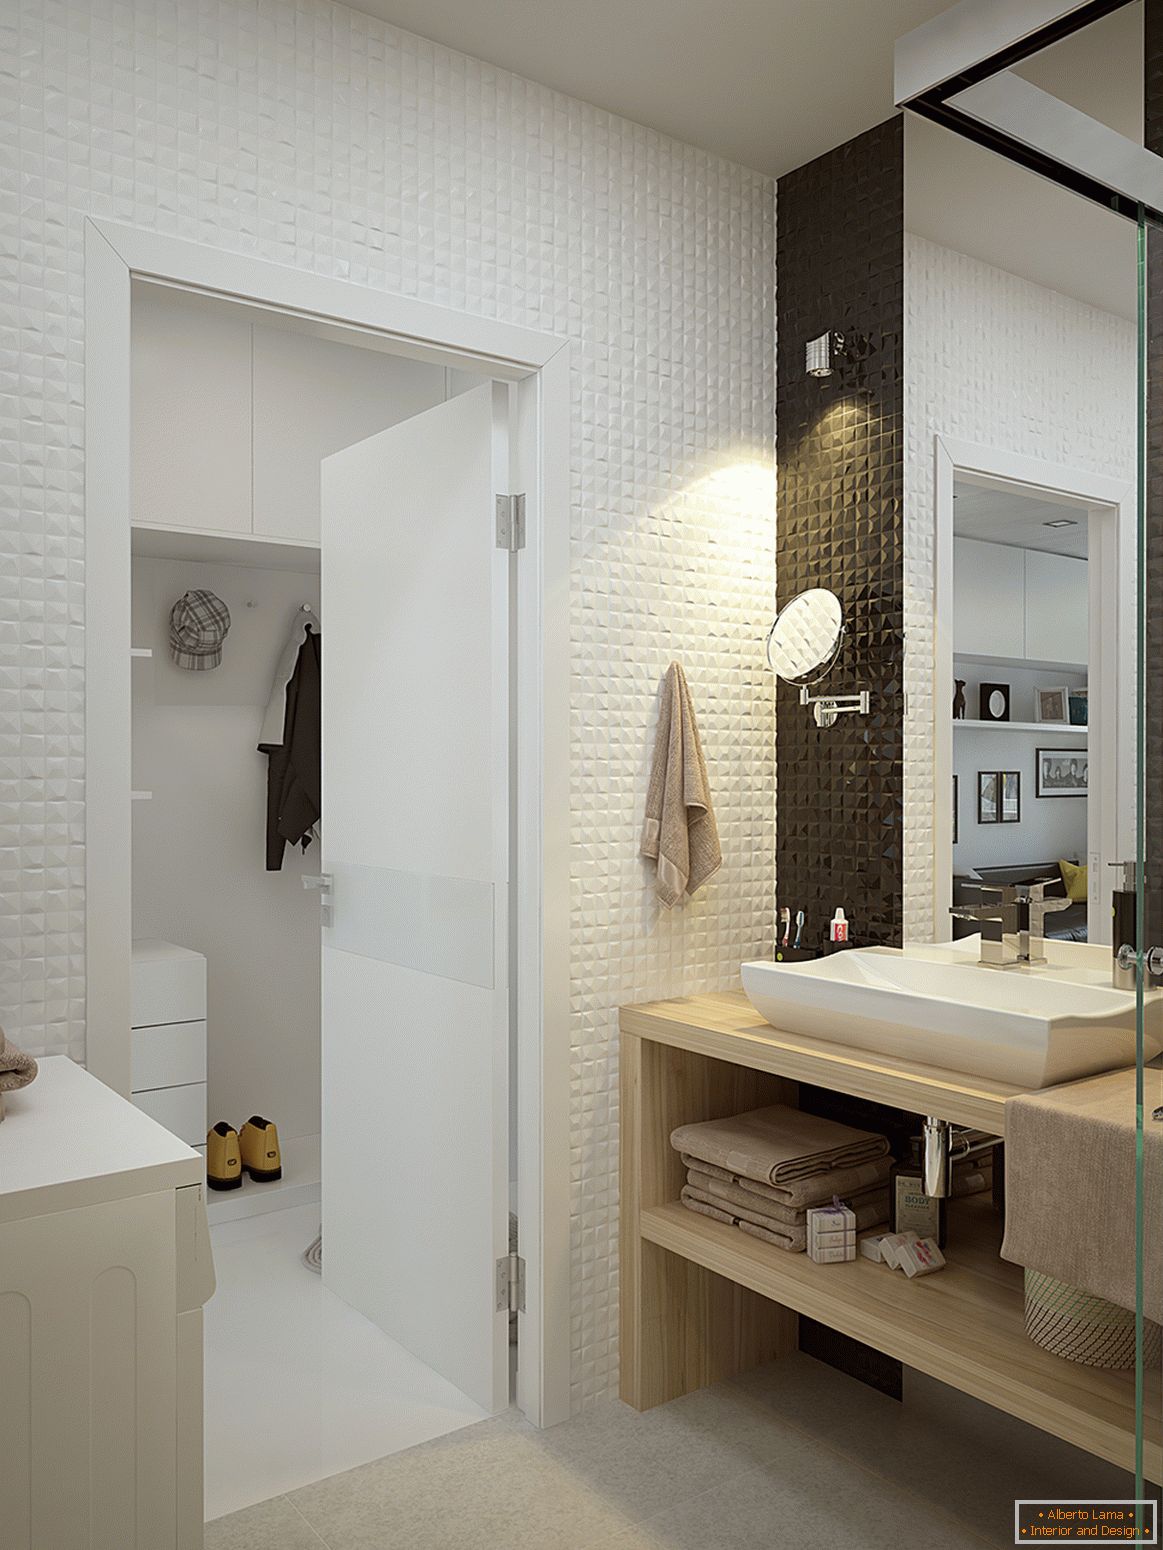 Interijer malog stana u kontrastnim bojama - ванная